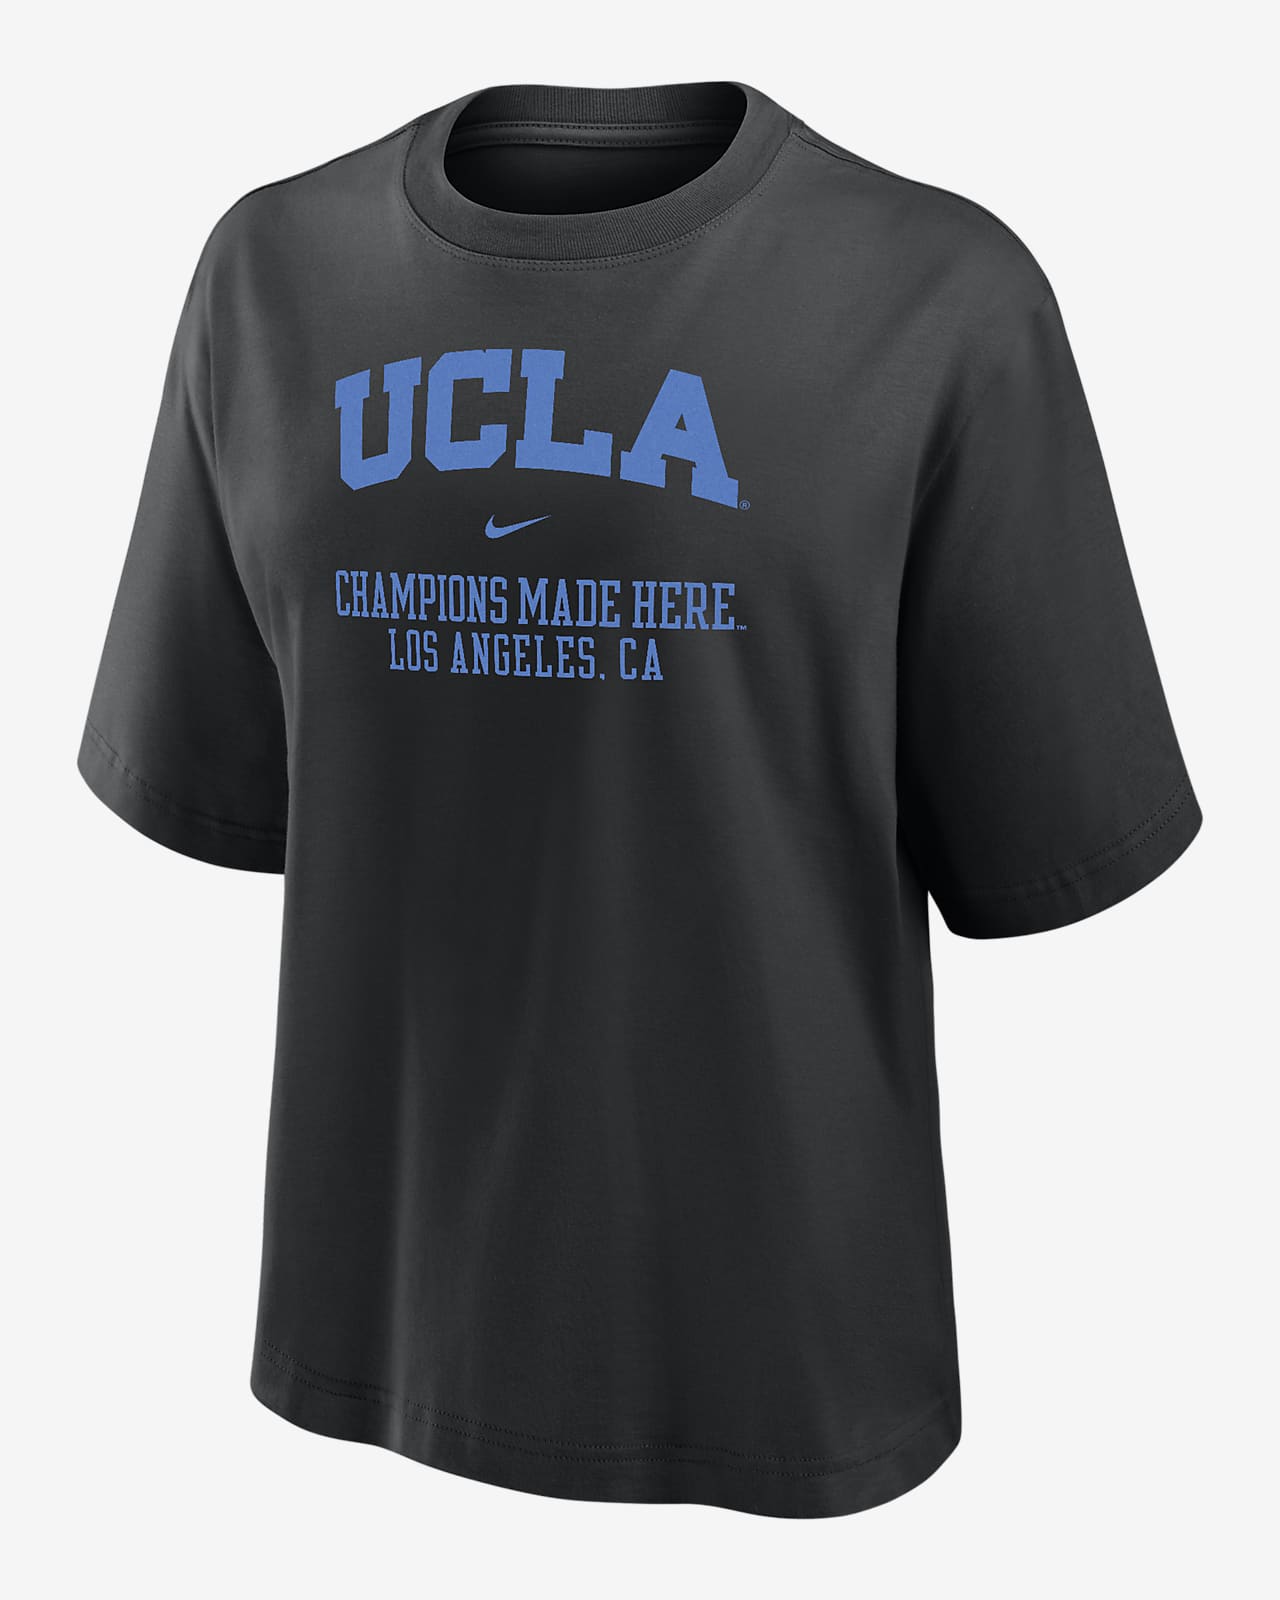 UCLA Women's Nike College Boxy T-Shirt